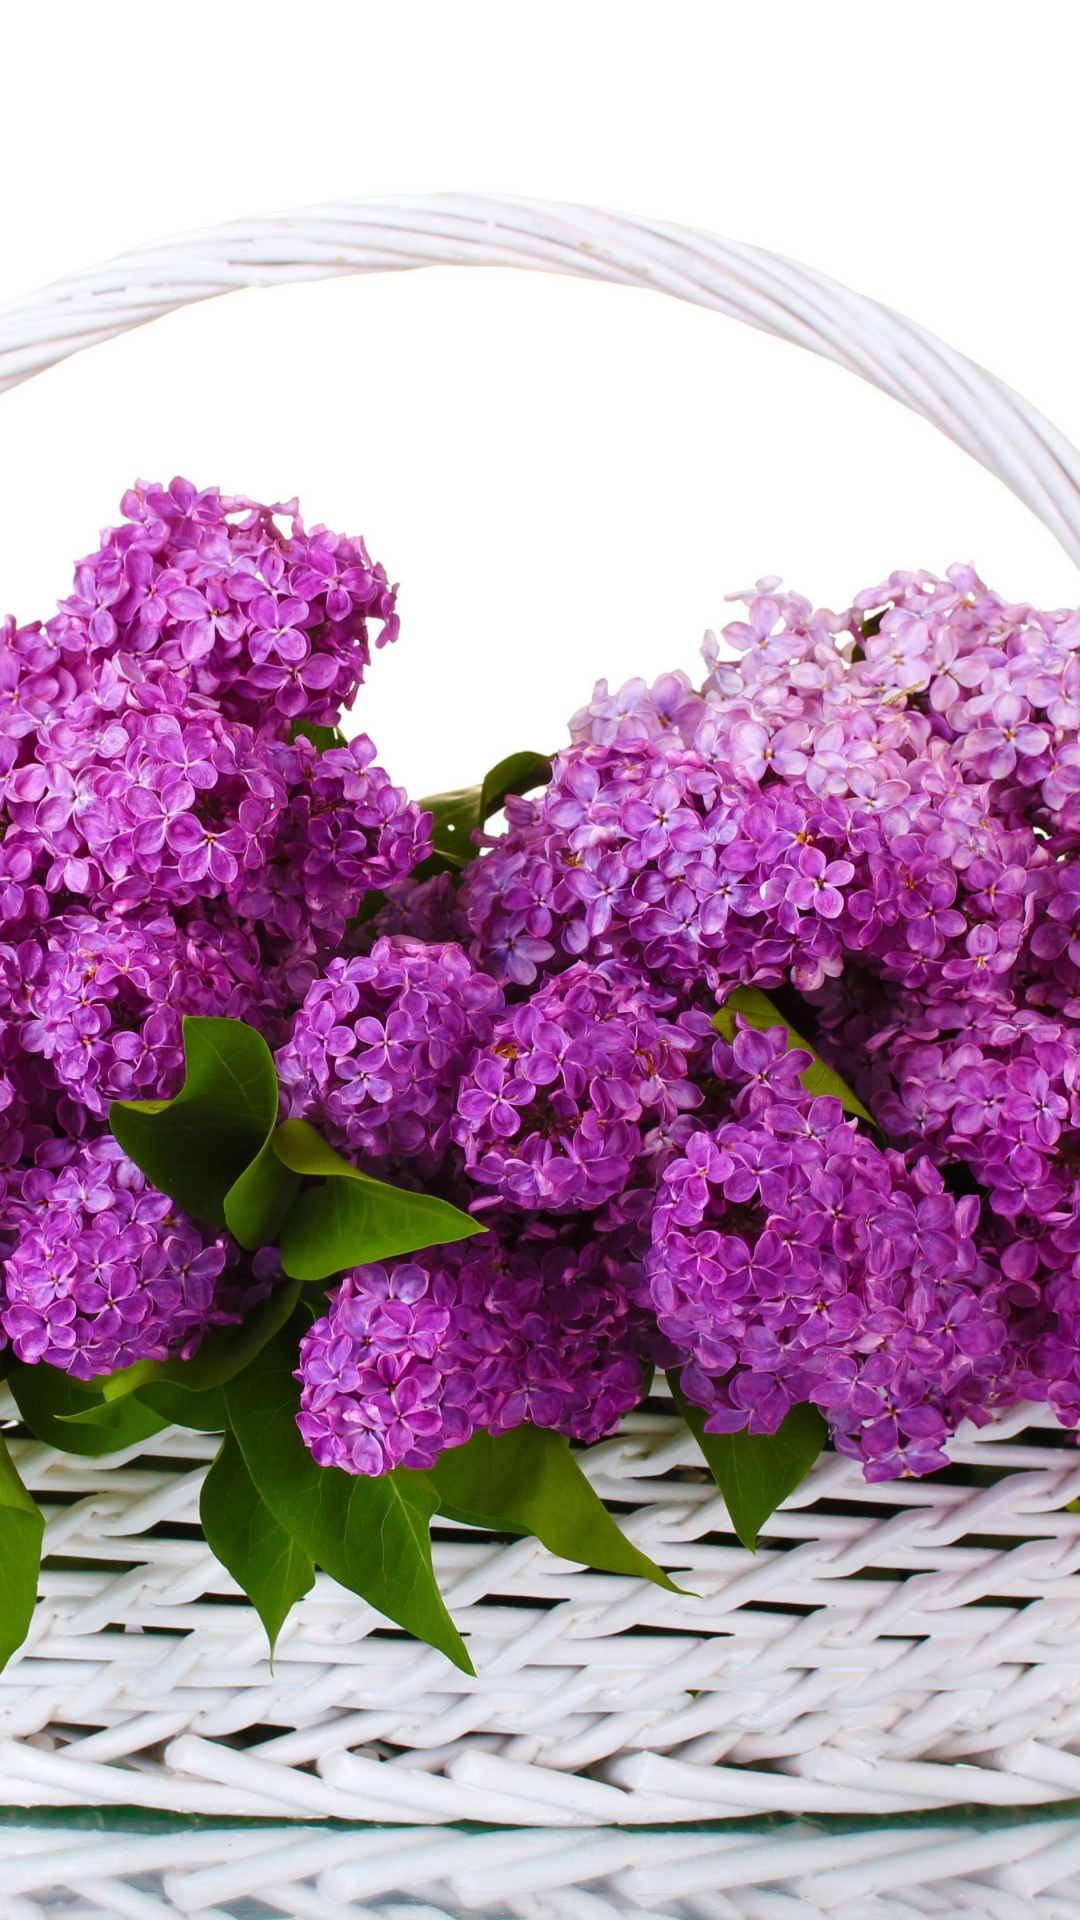 显花植物, 紫色的, 淡紫色的, 紫罗兰色, 切花 壁纸 1080x1920 允许